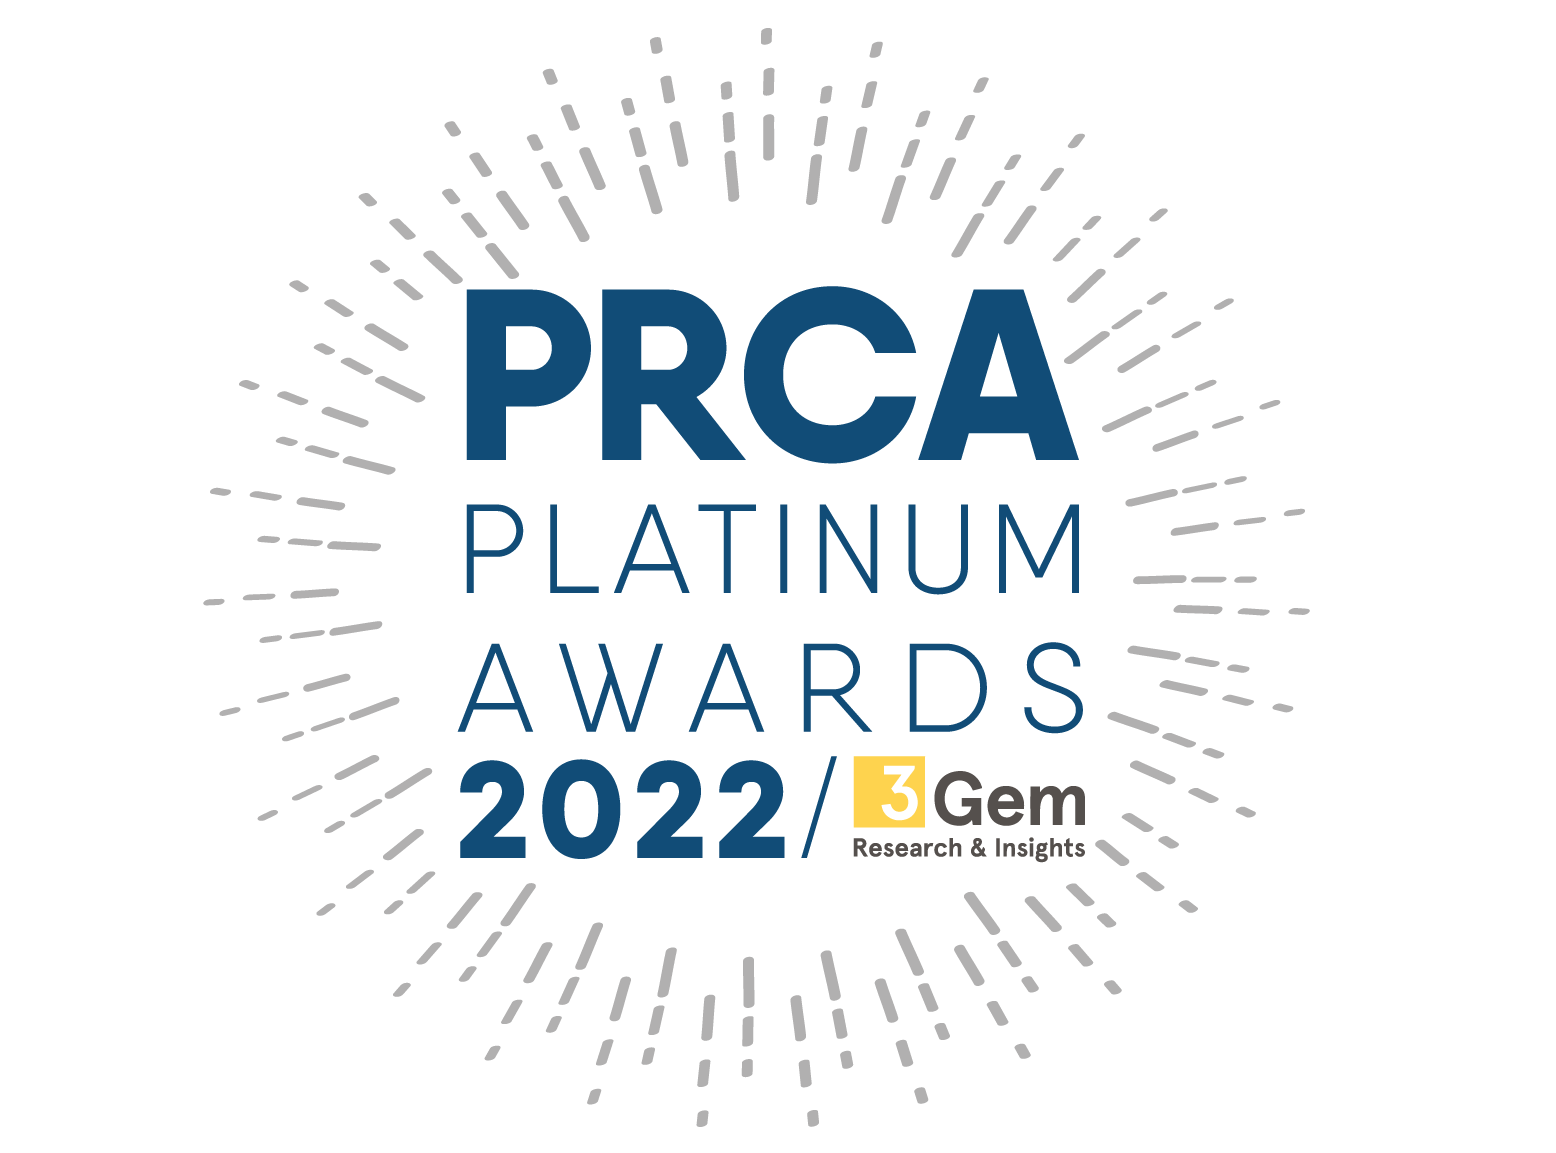 PRCA Platinum Awards 2022